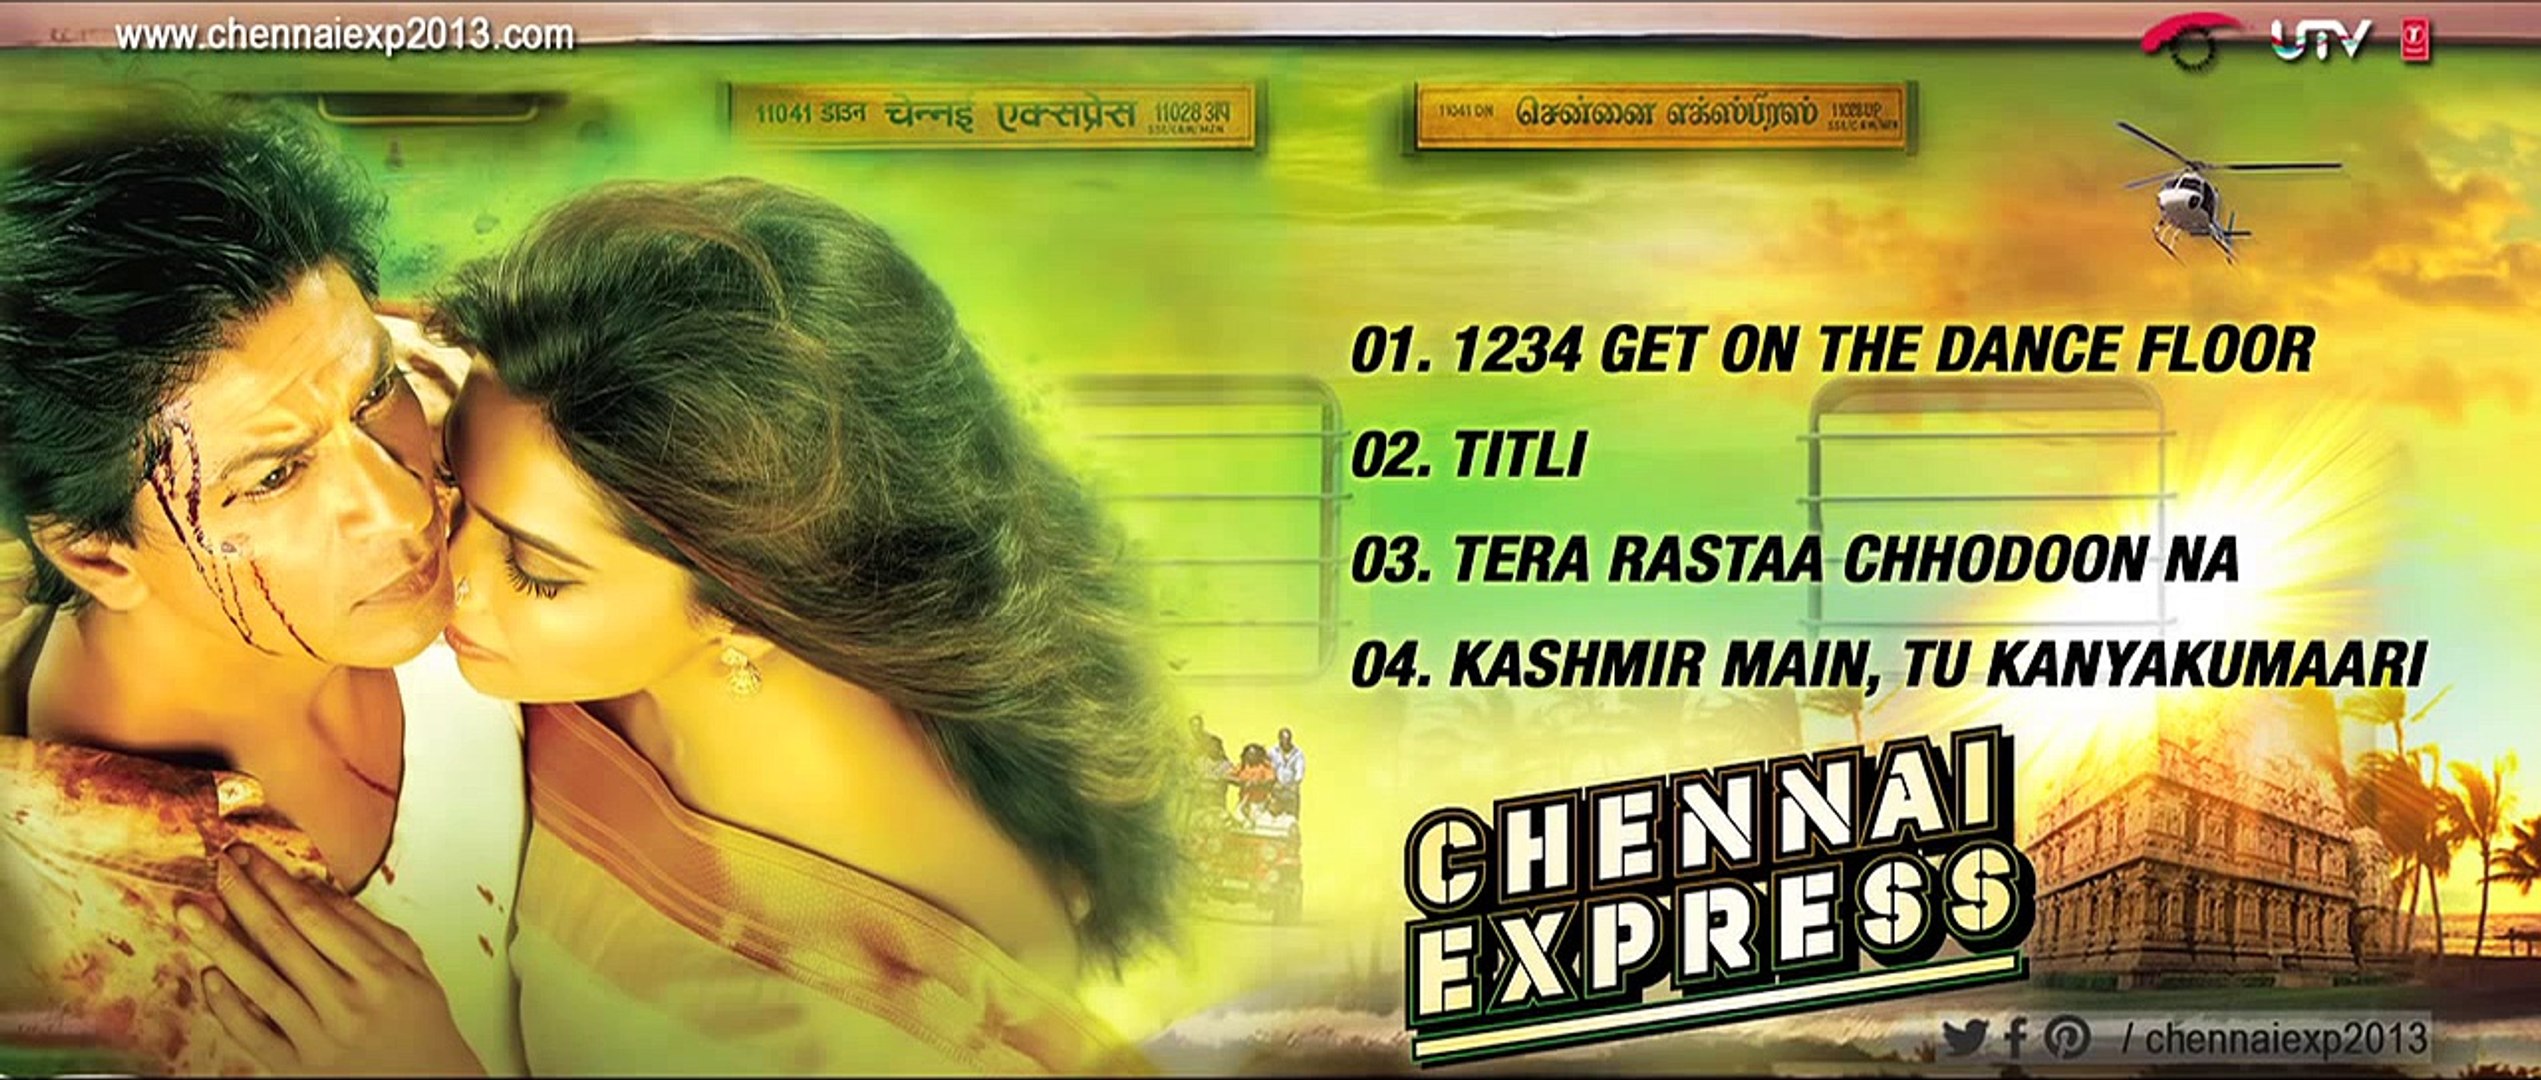 Chennai Express Full Songs Jukebox Shahrukh Khan Deepika